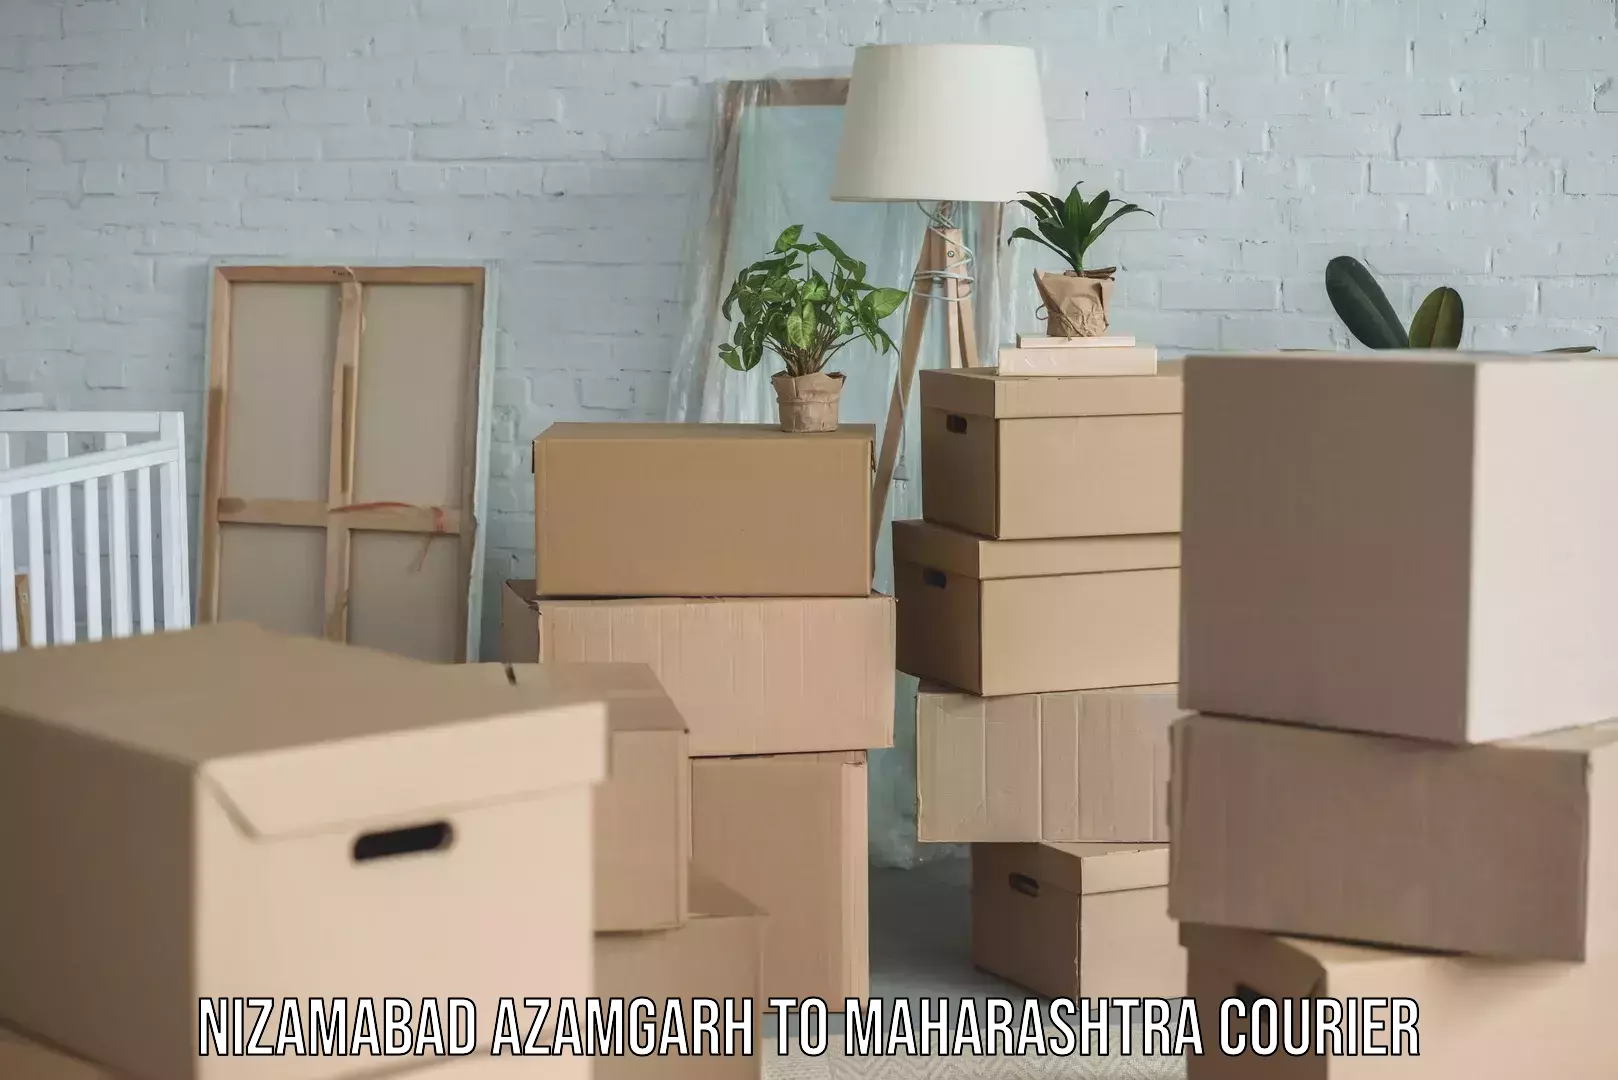 Professional furniture movers Nizamabad Azamgarh to Maharashtra